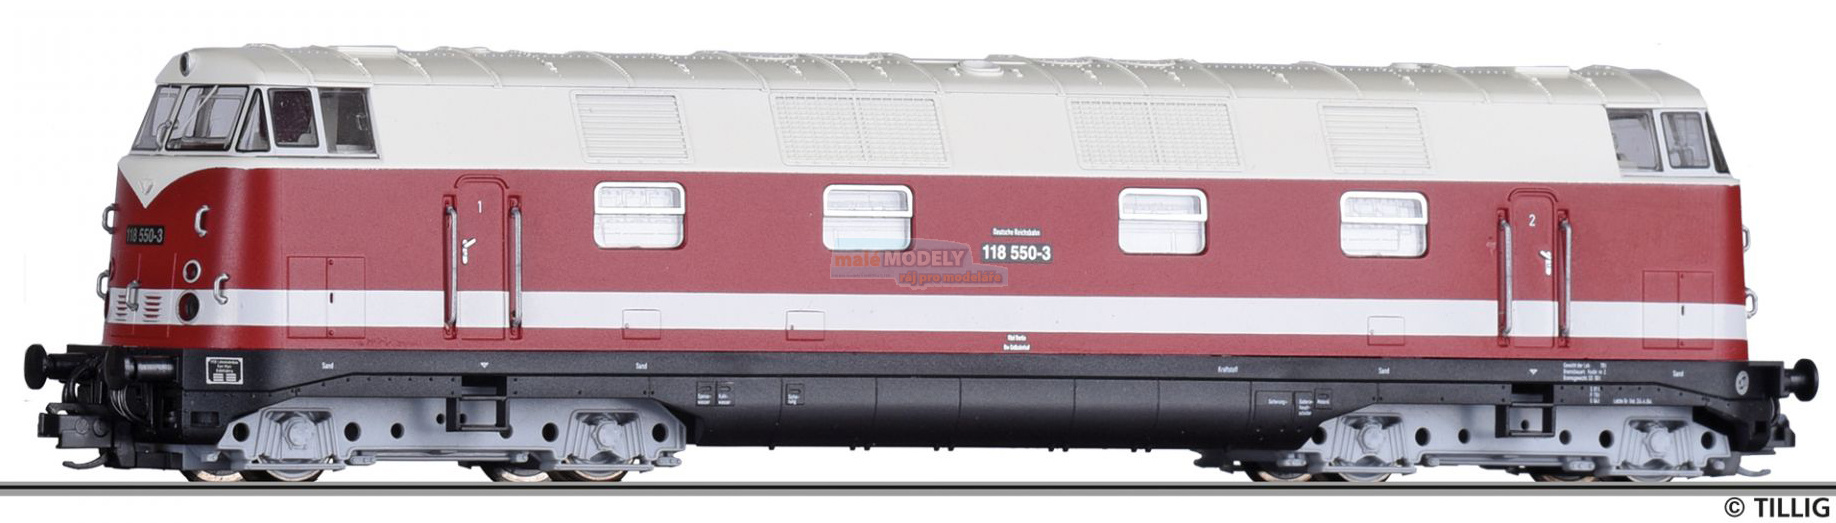 Dieselová lokomotiva 118 550-3 - (31.03.2020)